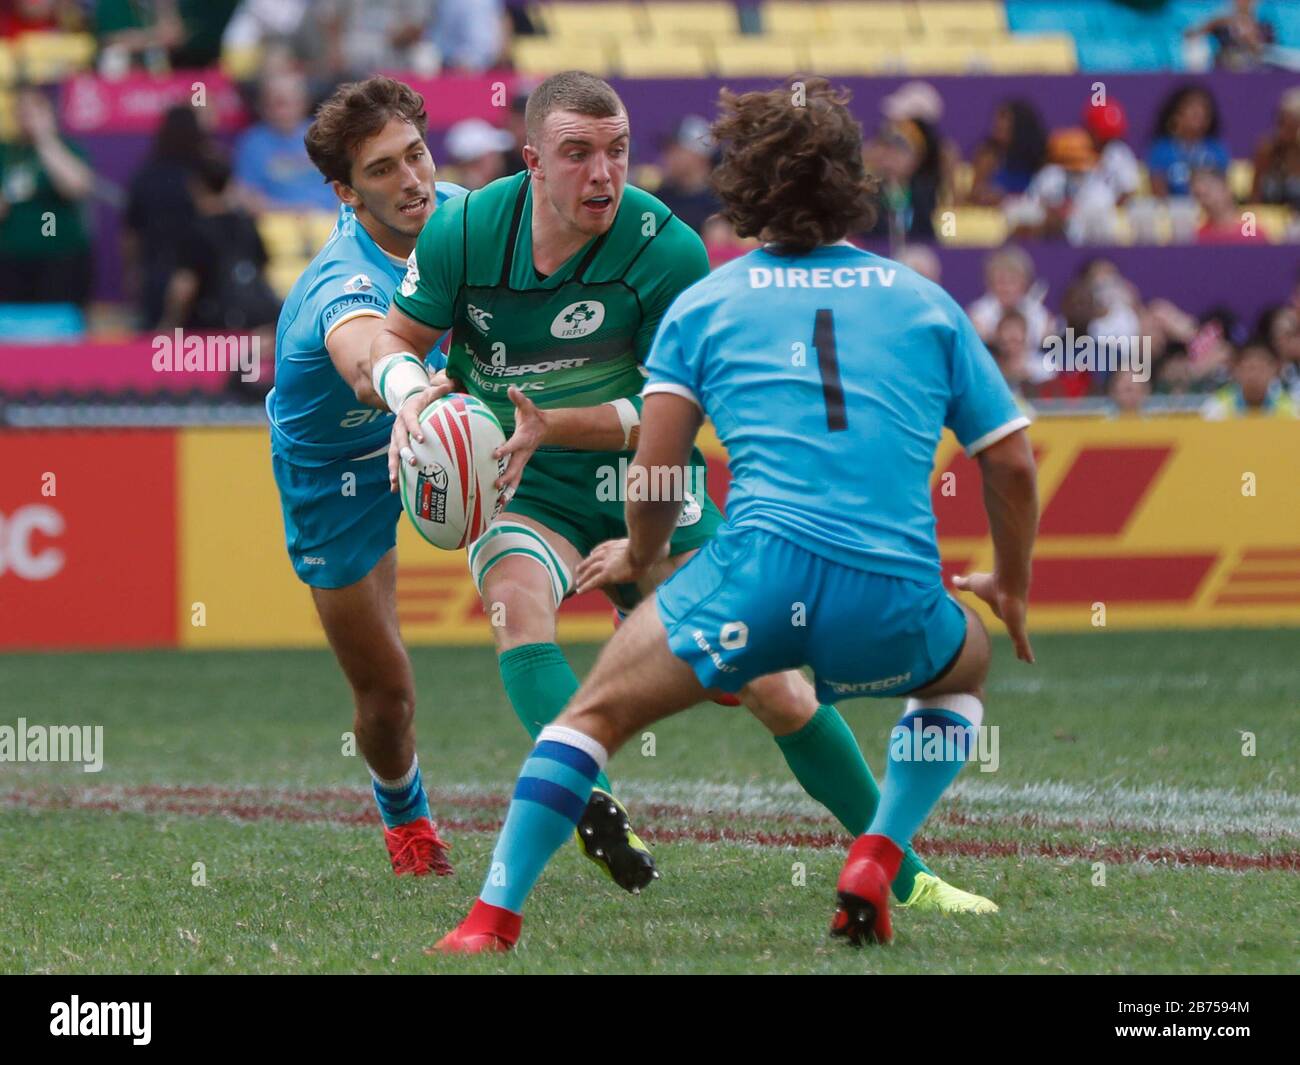 L'équipe irlandaise est en compétition contre l'équipe uruguayenne lors du premier jour du tournoi mondial de rugby à sept 2019 - Hong Kong à Hong Kong. Banque D'Images